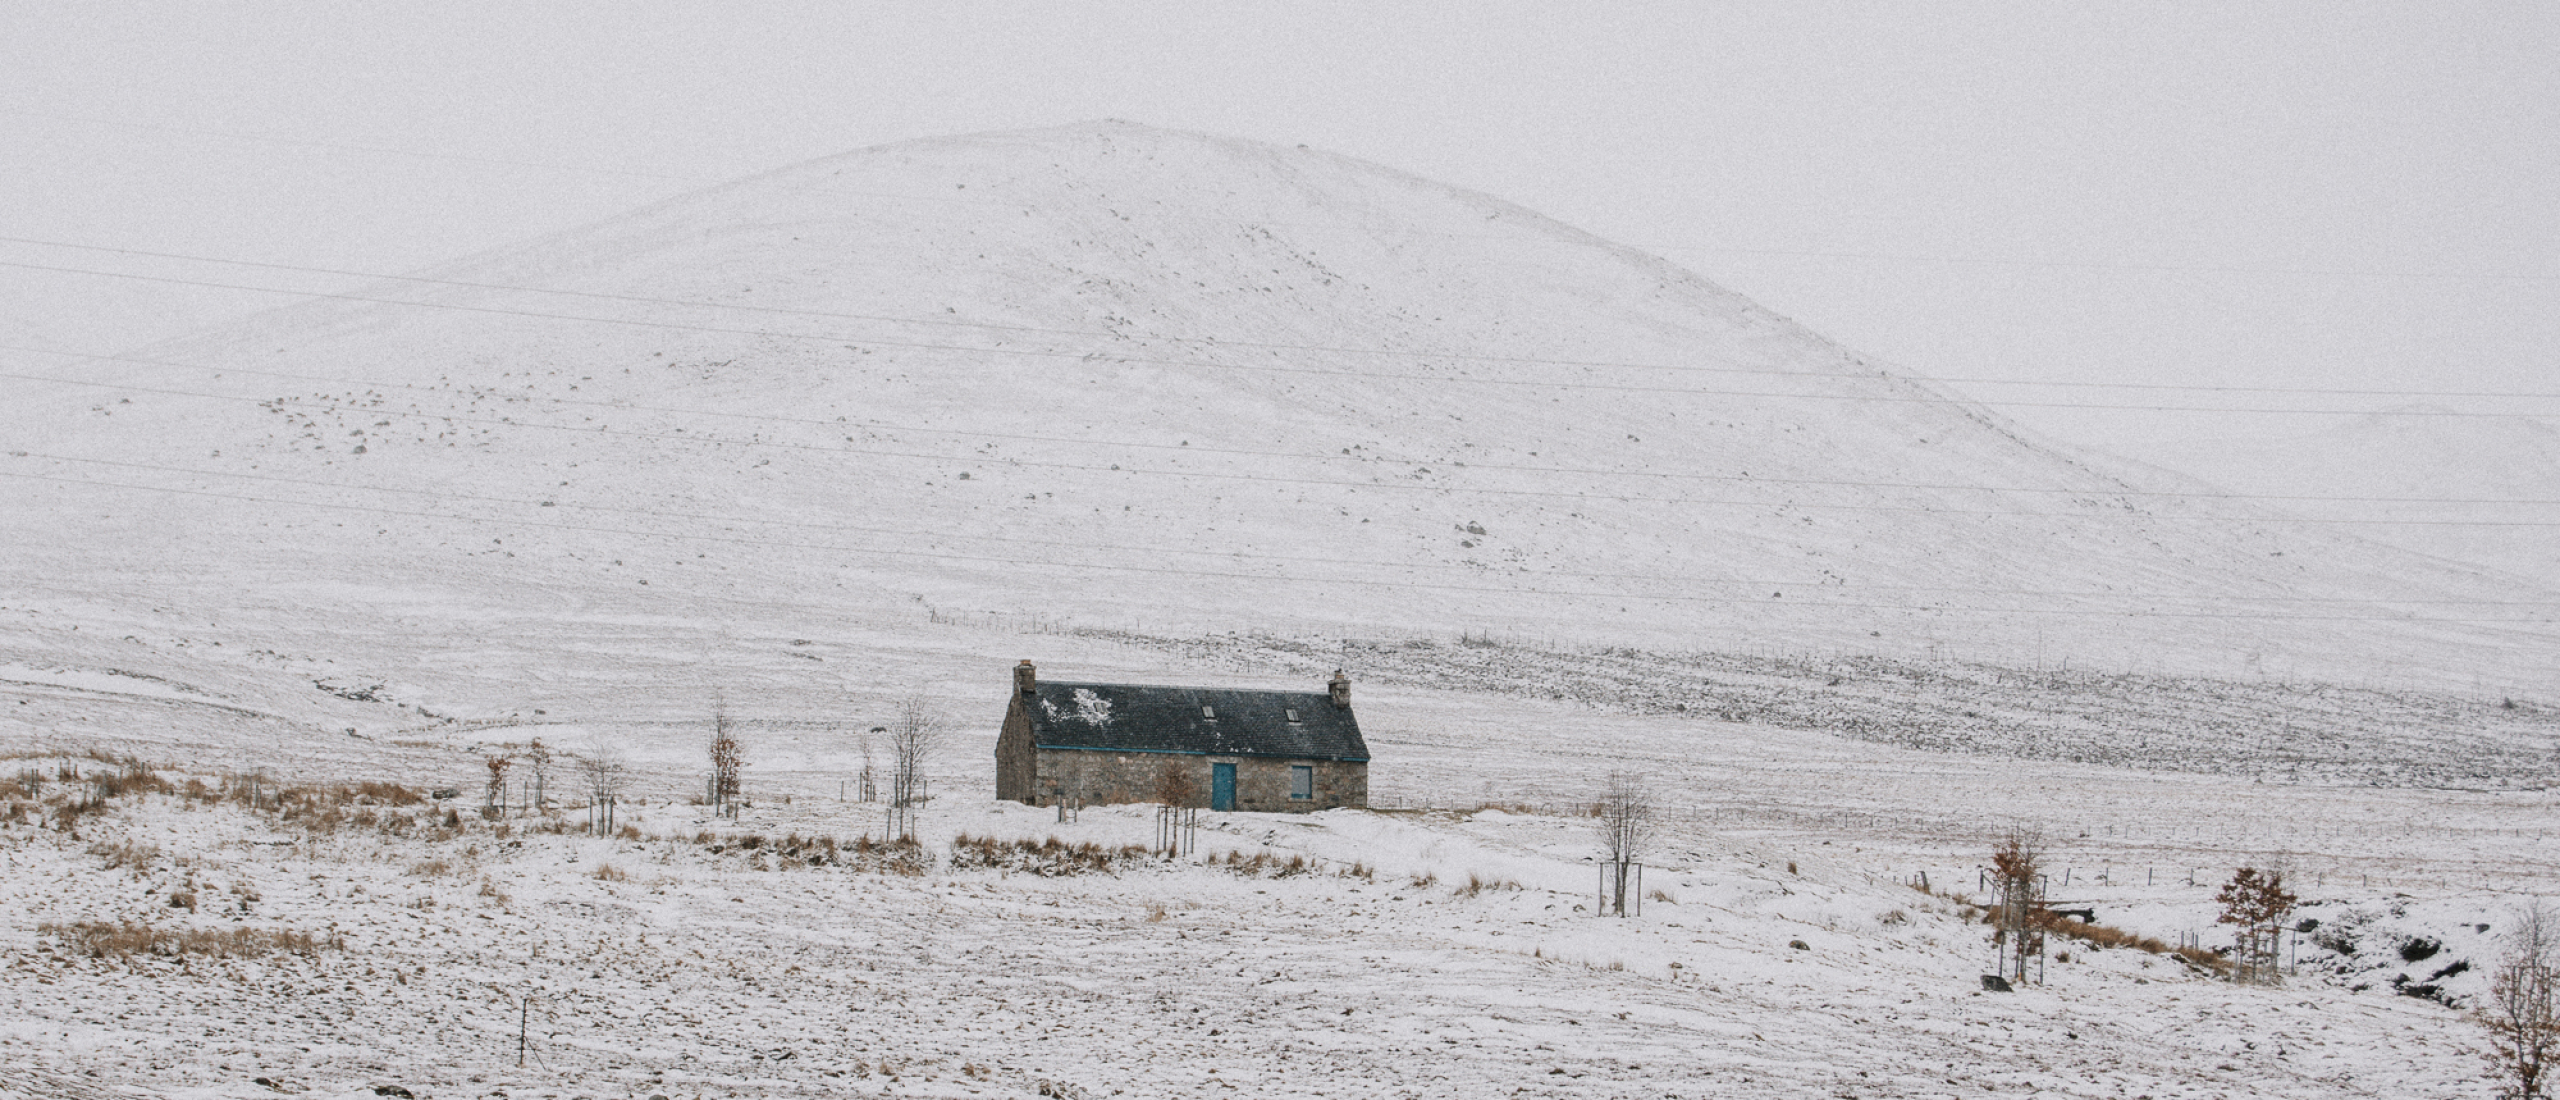 Winter in Schotland